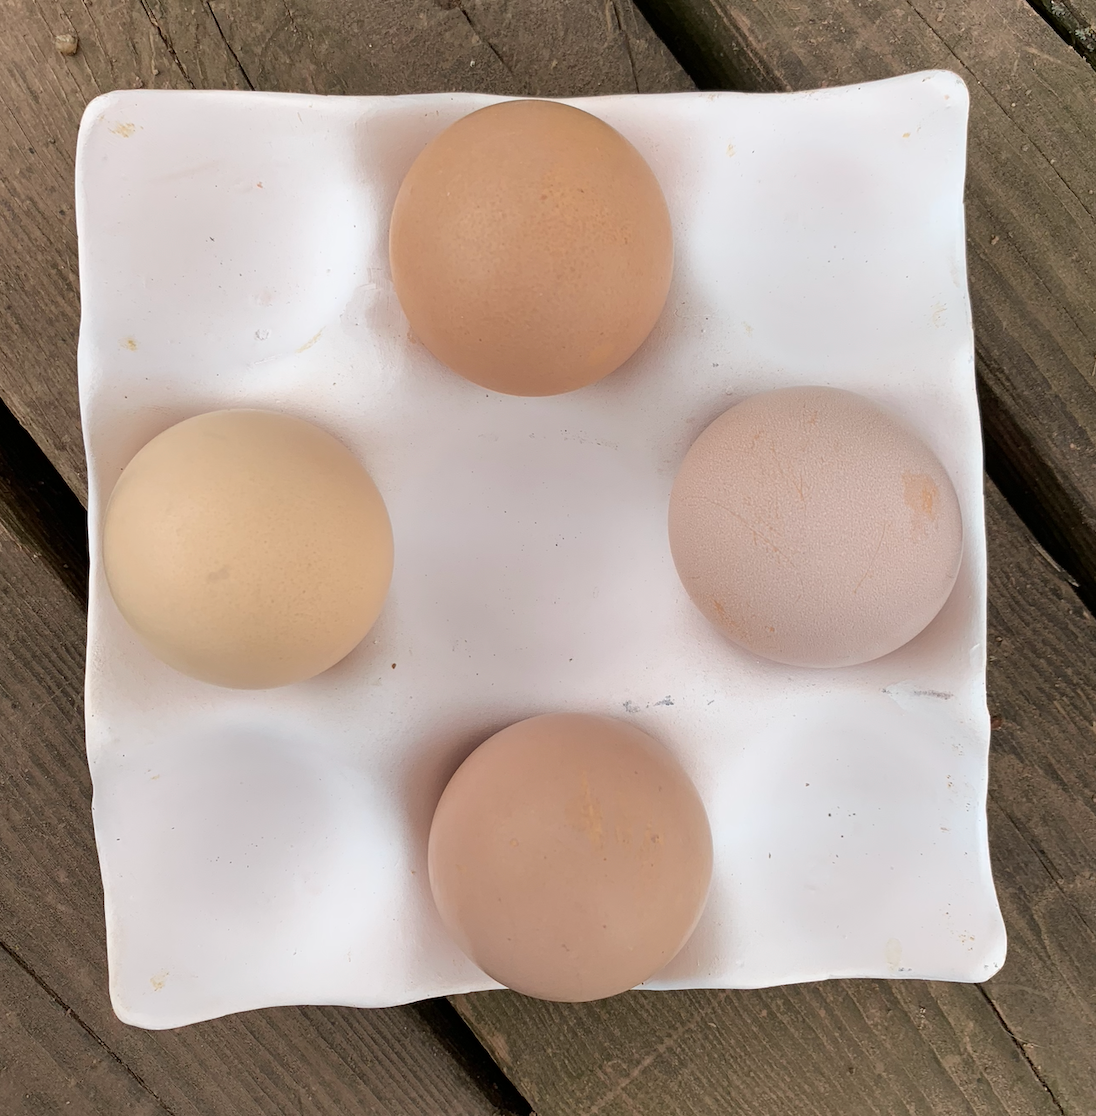 Hatching Egg: Delaware